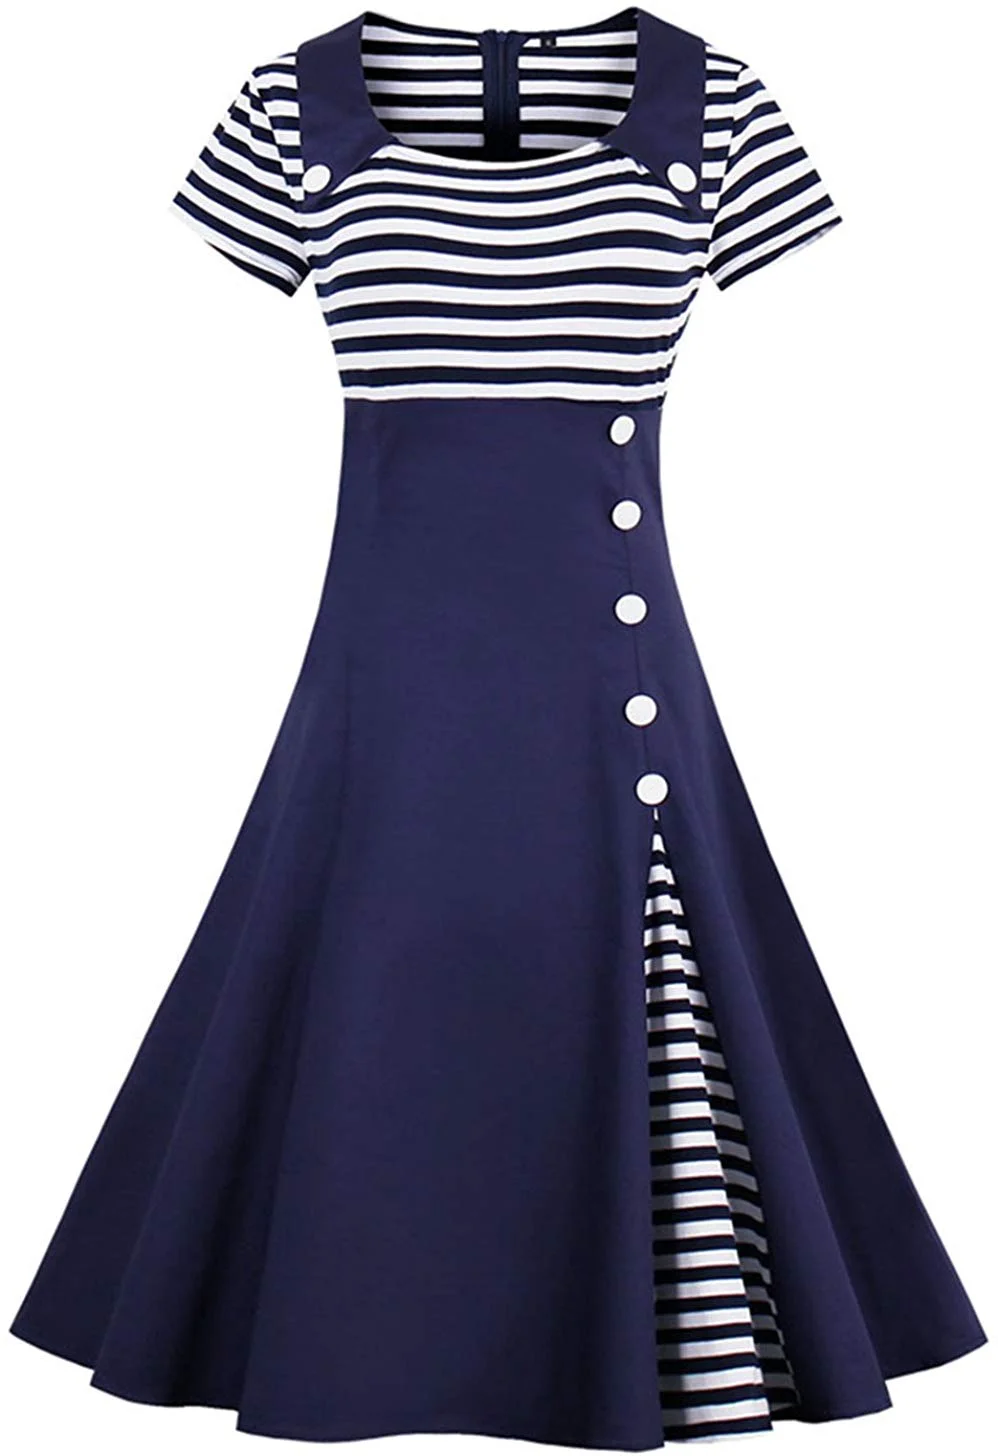 Women's Vintage Pin Up A Line Stripes Sailor Dress